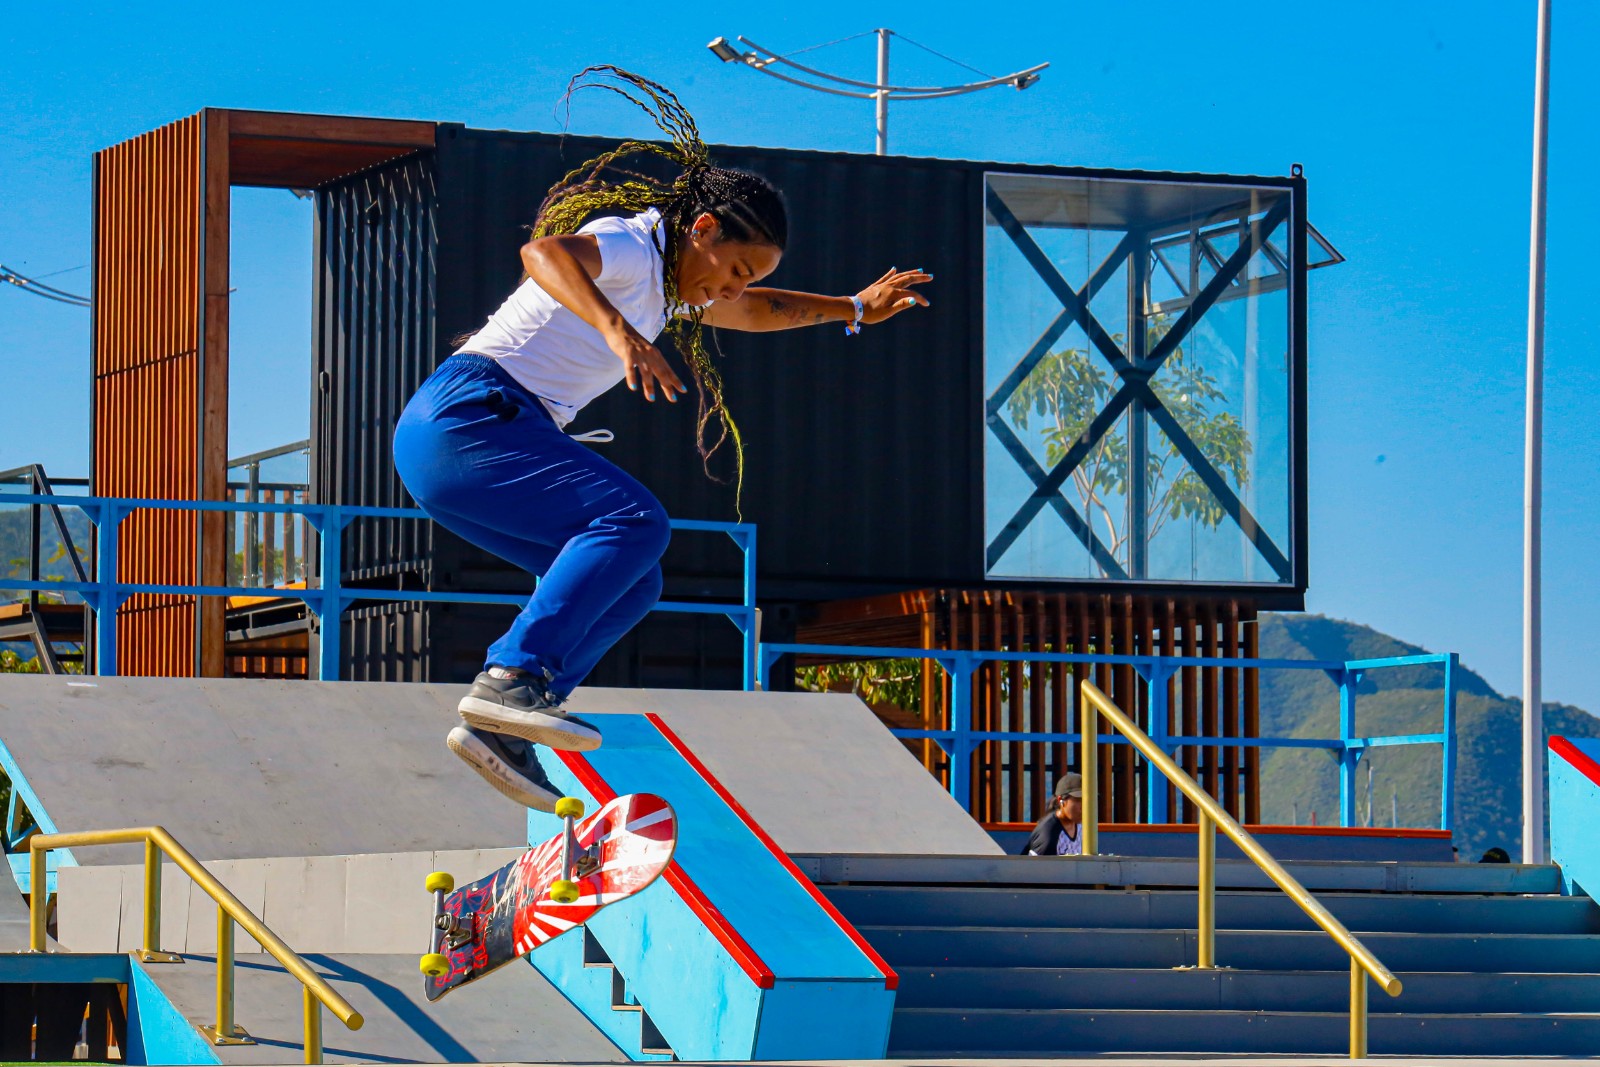 Alcaldía de Santa Marta brinda a samarios y visitantes nuevo escenario deportivo de skateboarding